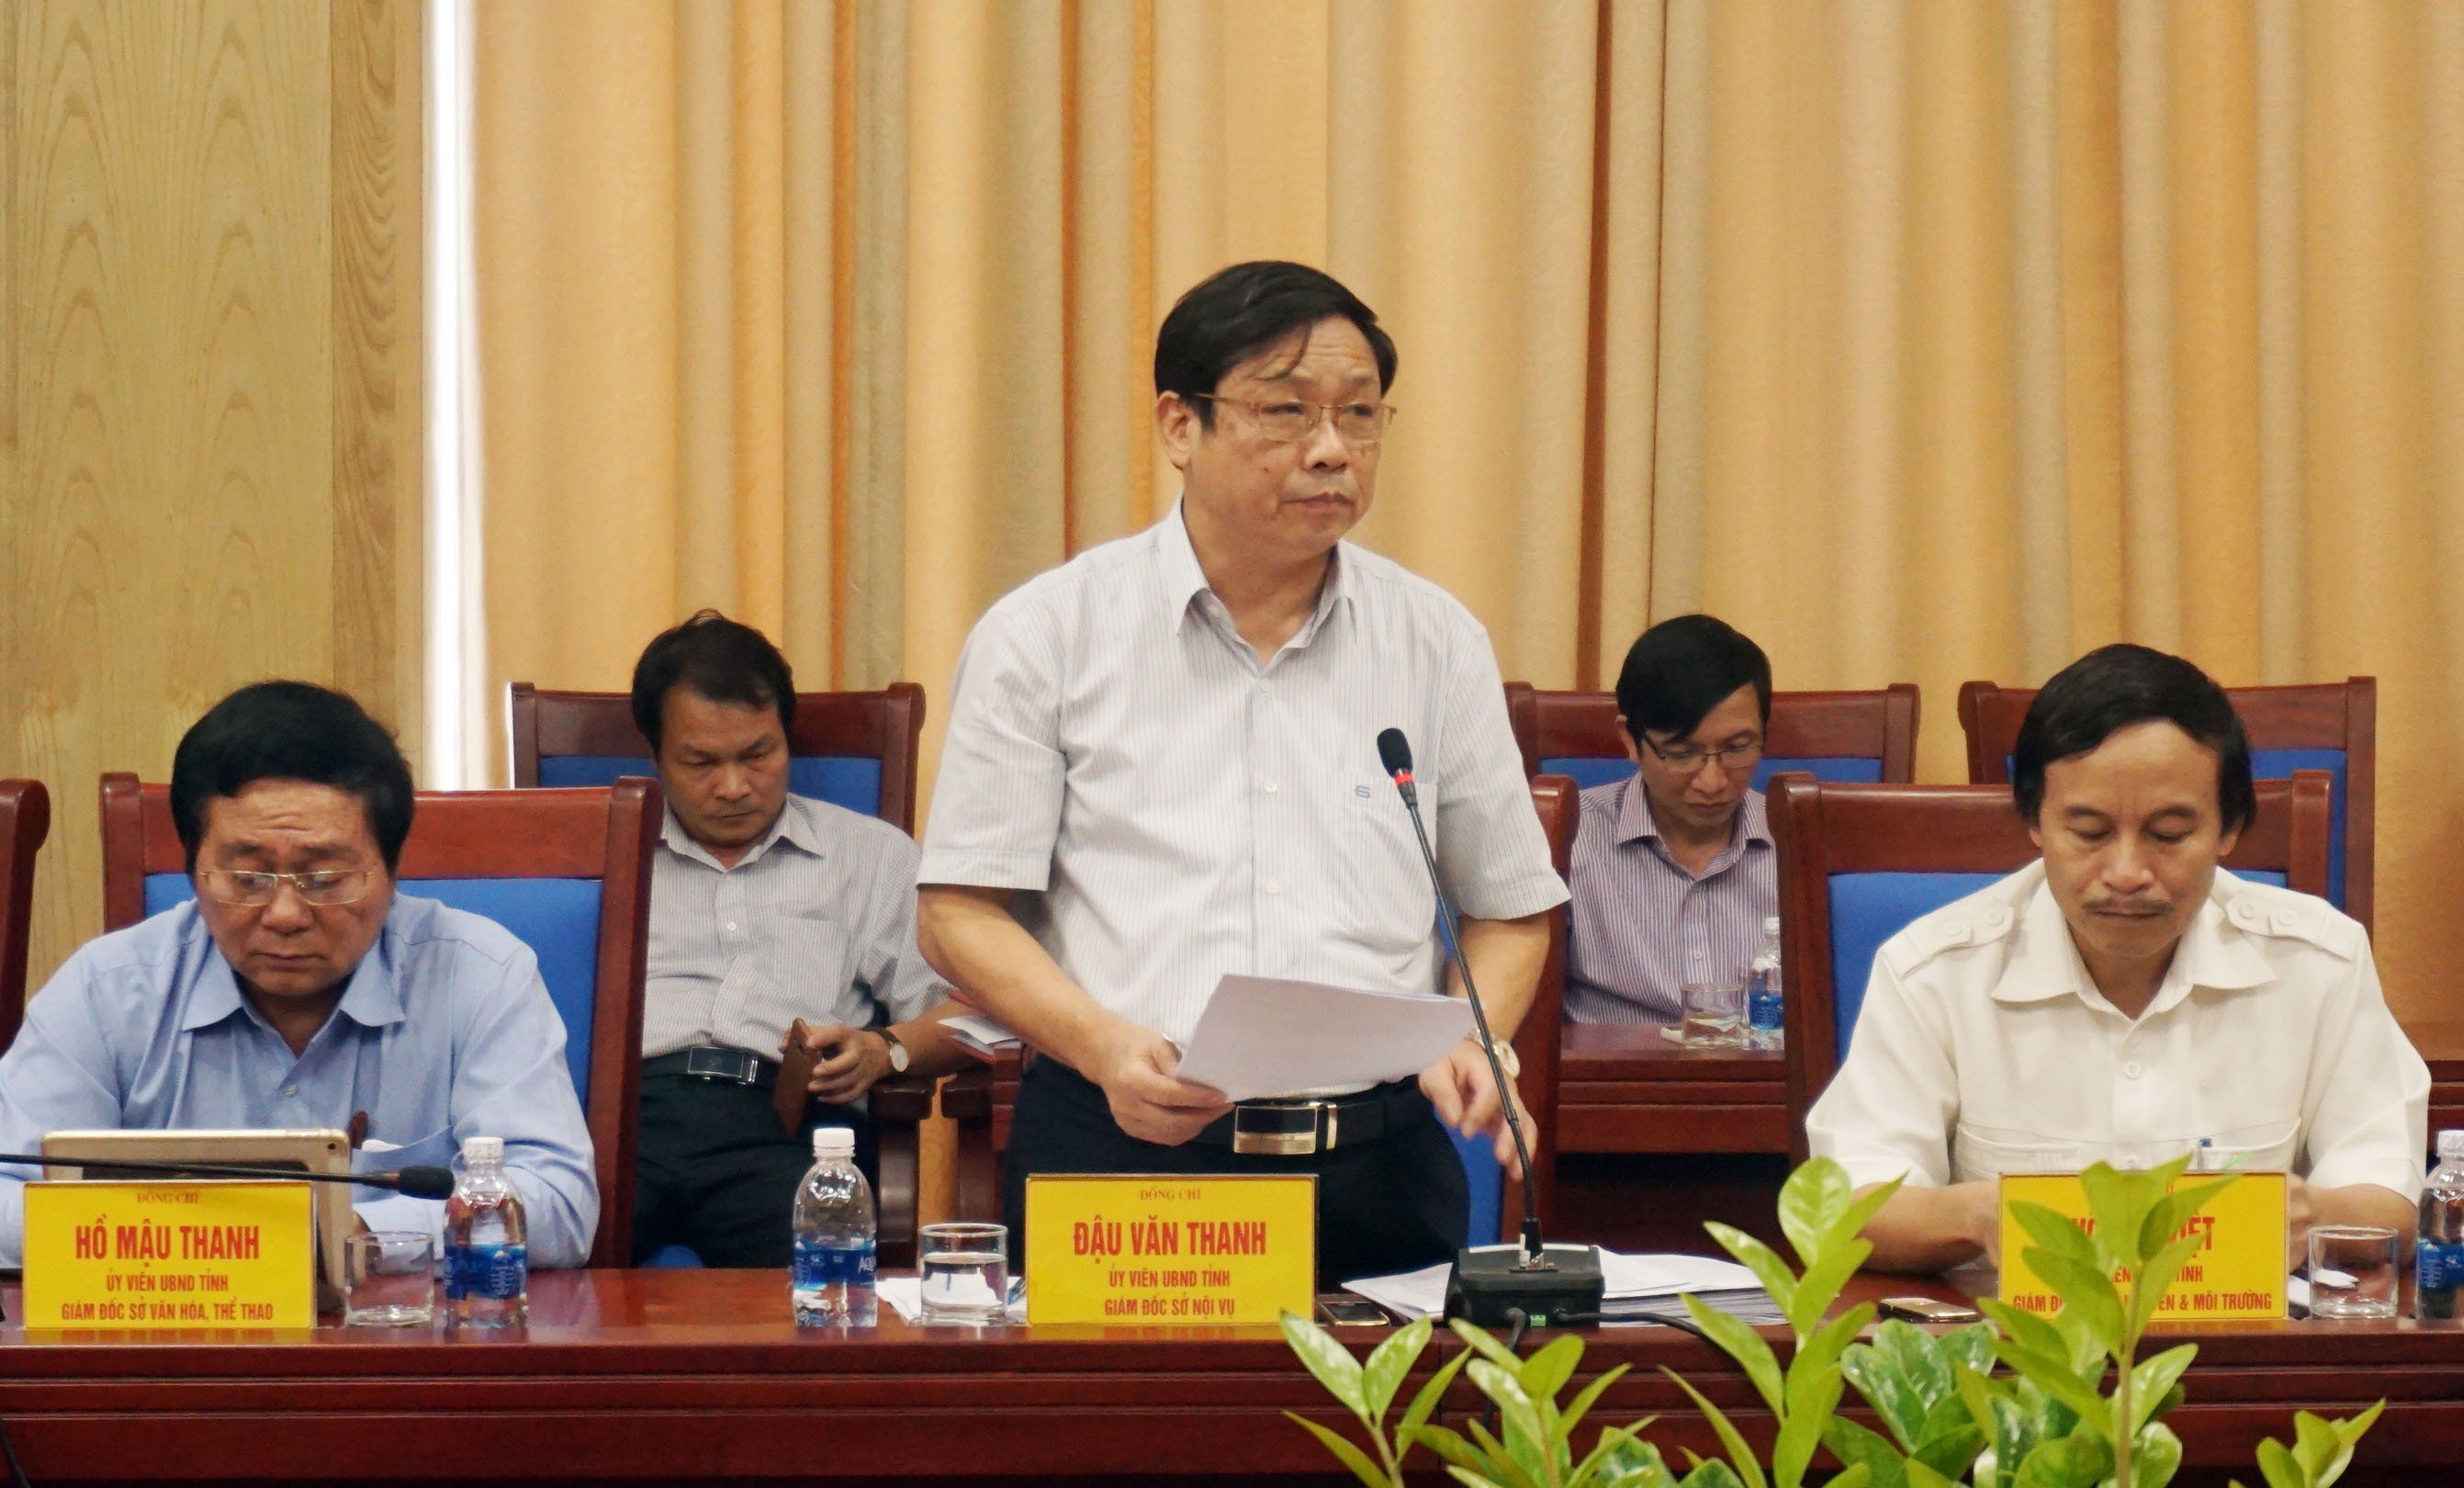 Ông Đậu Văn Thanh-Giám đốc Sở Nội vụ trình bày báo cáo về công tác cải cách hành chính